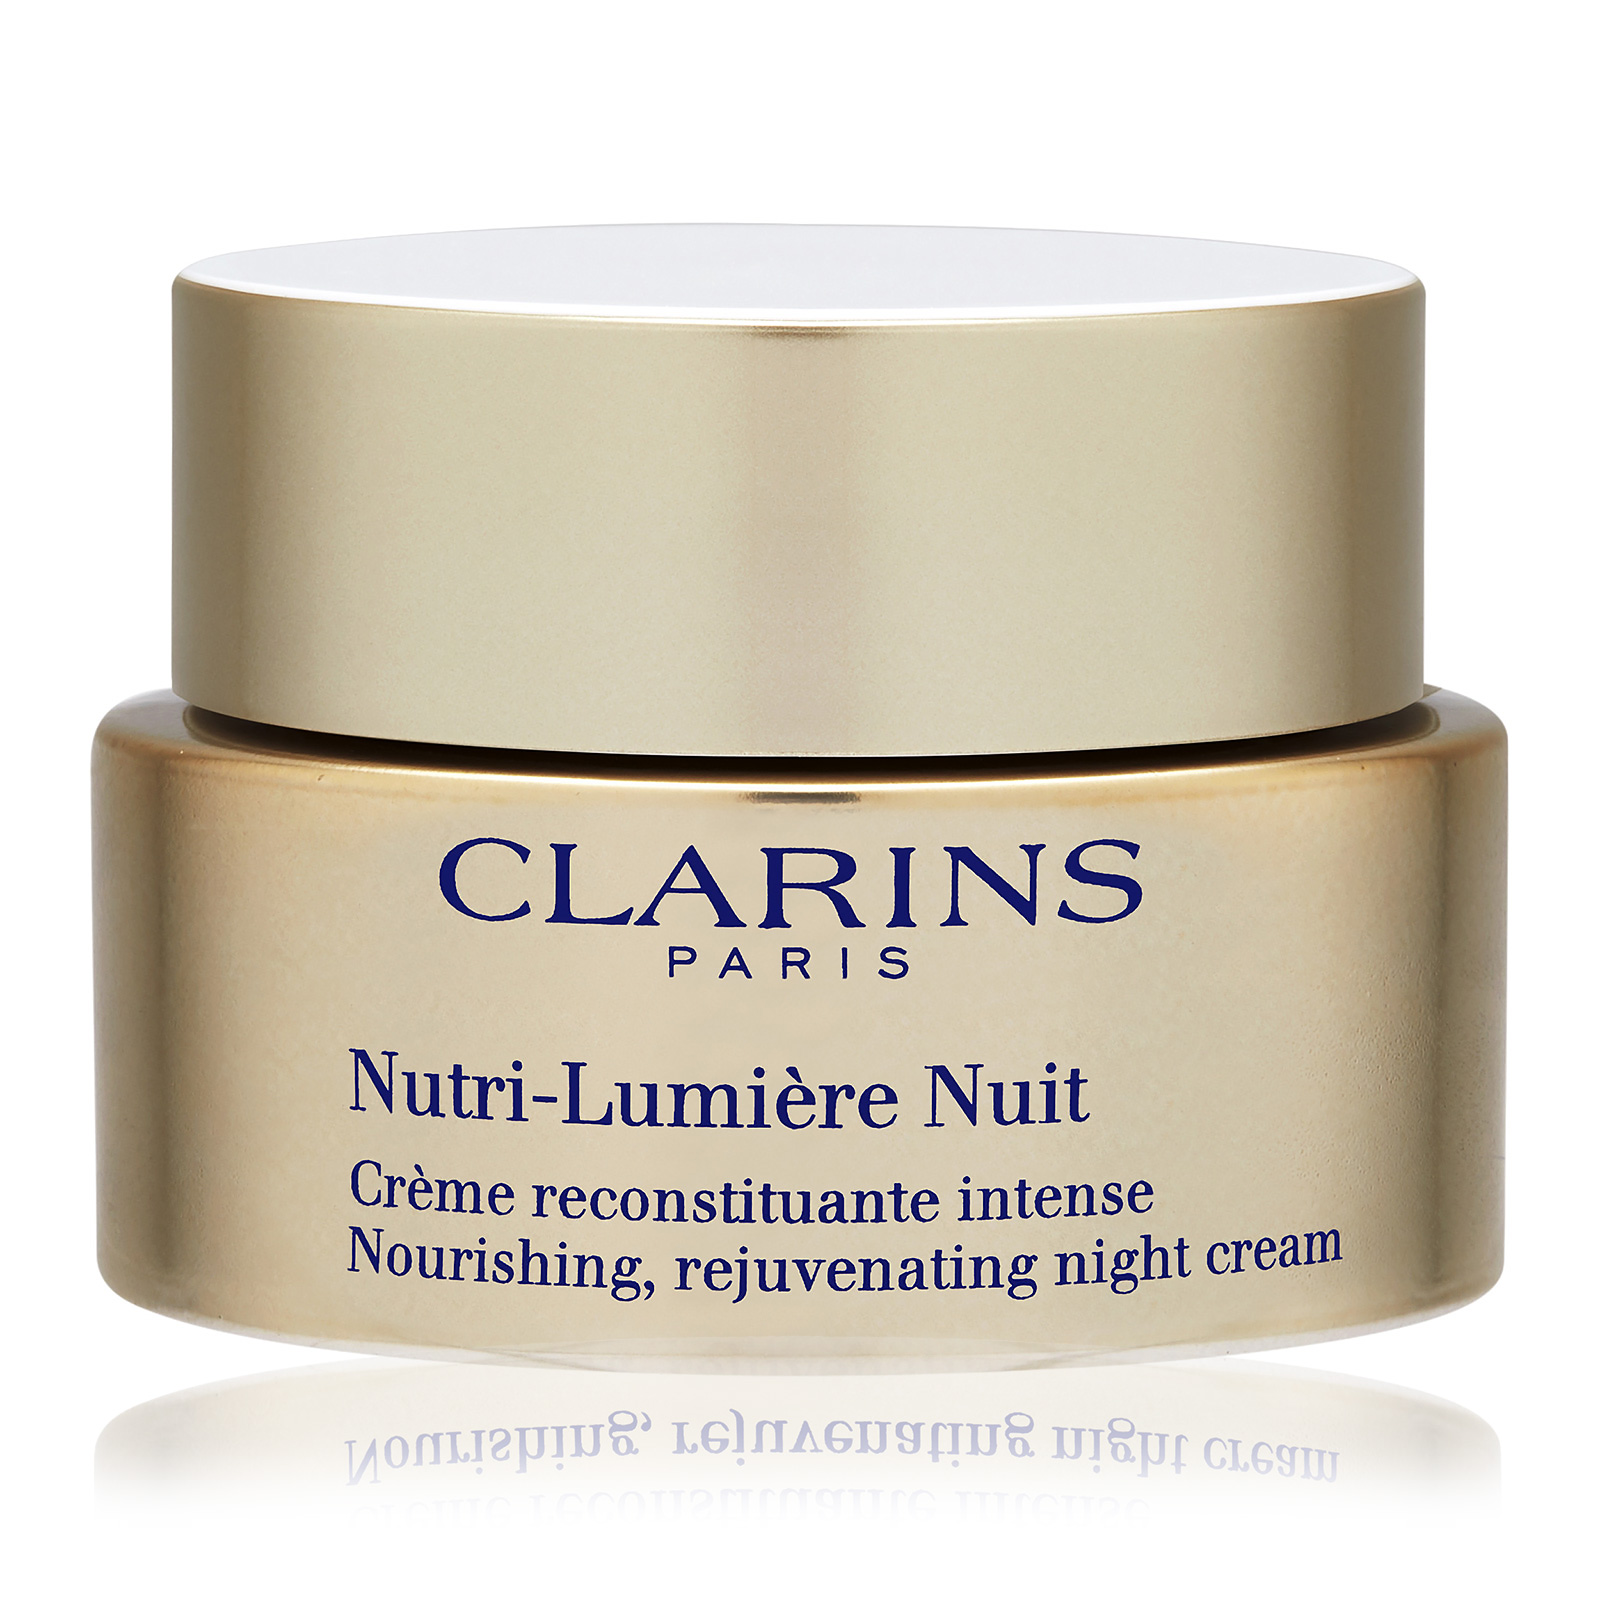 Nutri-Lumiere Nuit Nourishing, Rejuvenating Night Cream